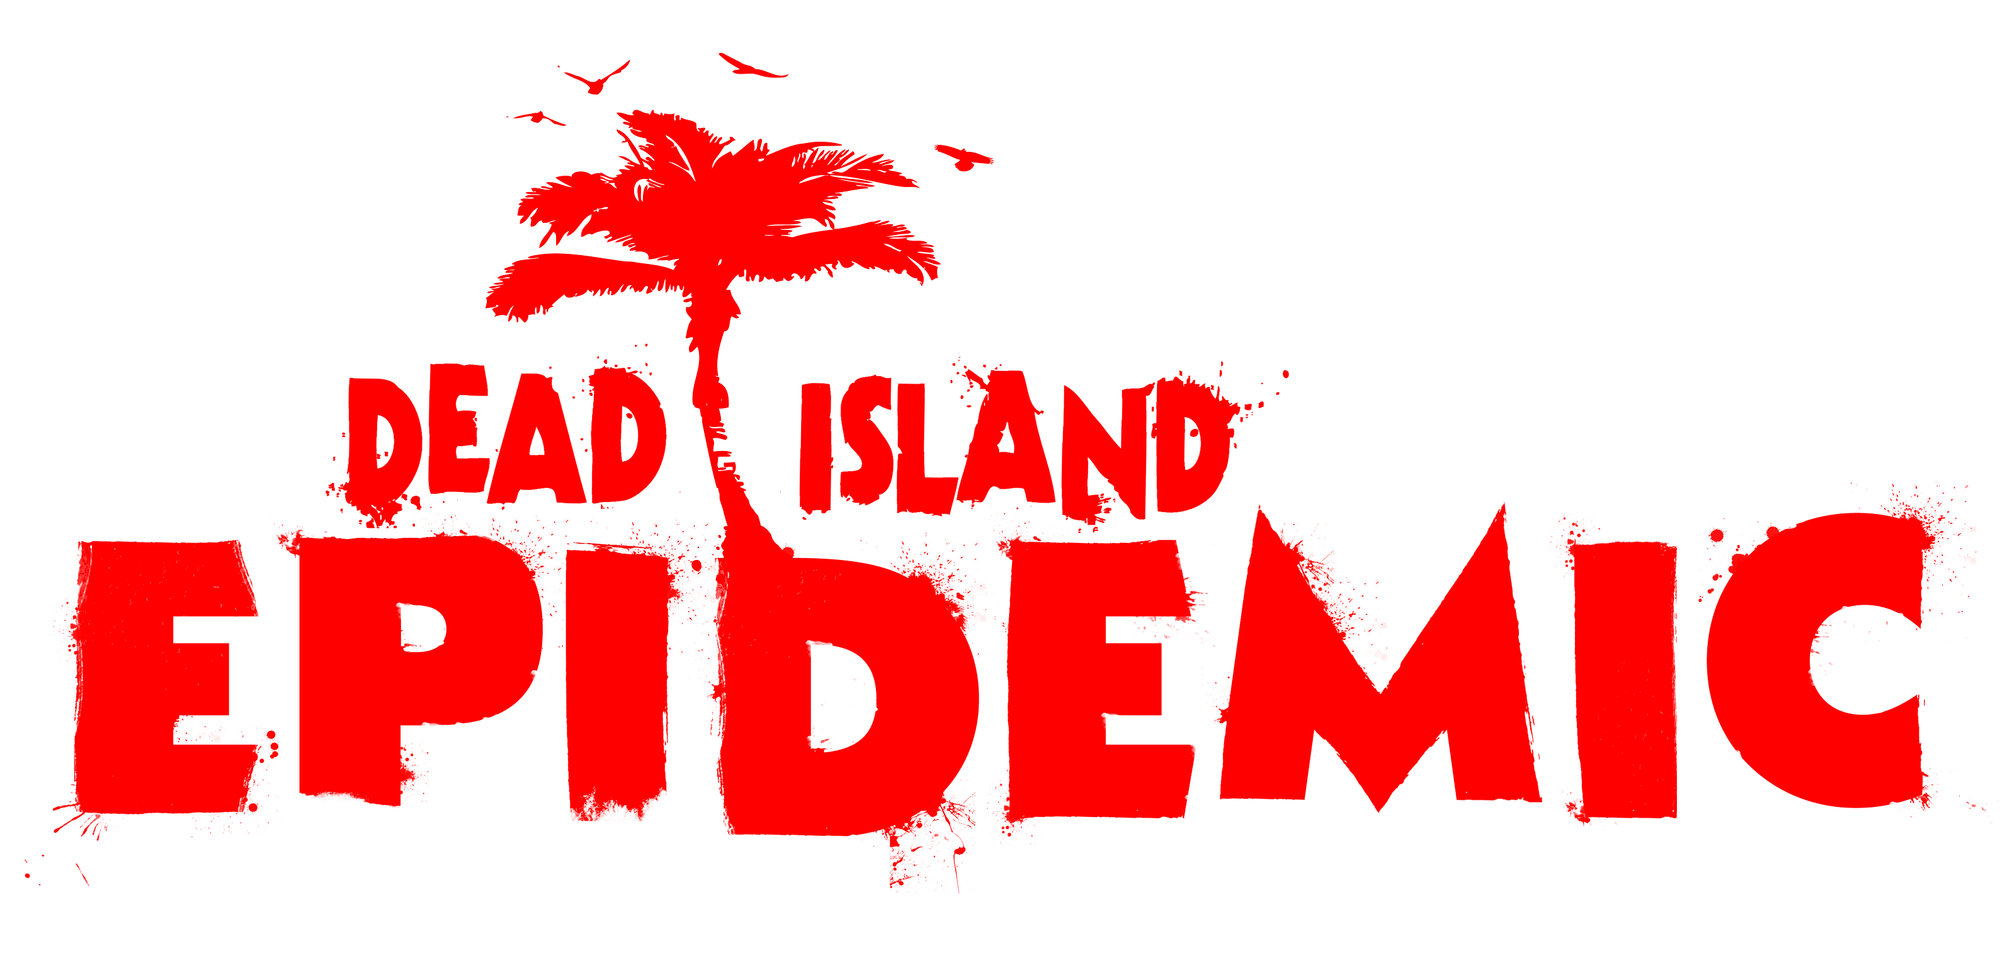 Island epidemic